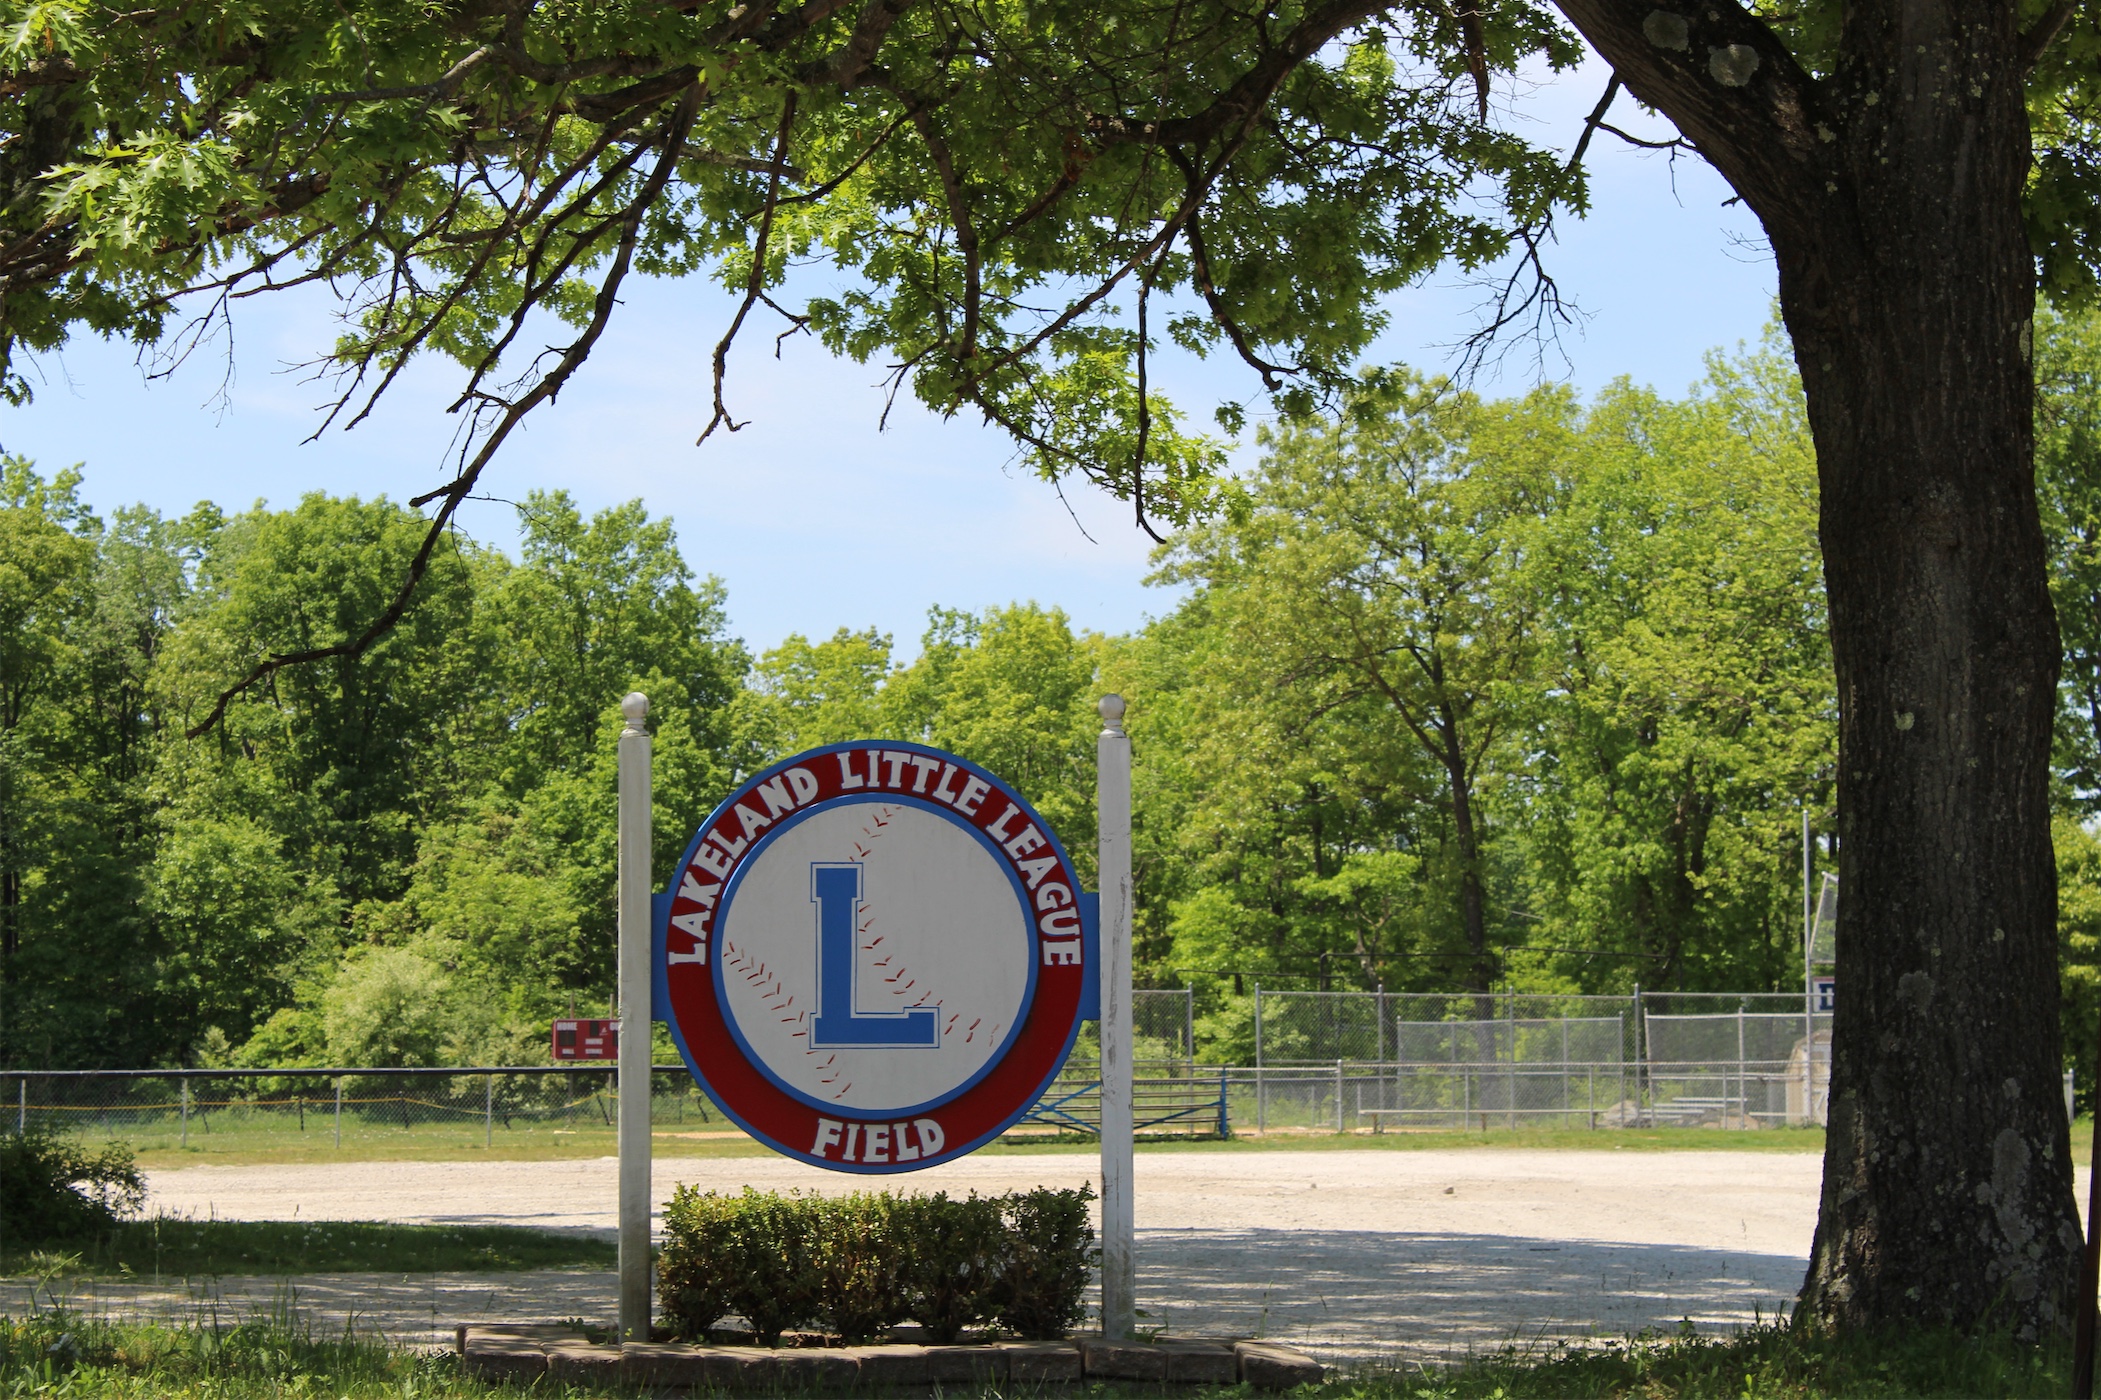 Lakeland Little League Field - Stanhope, NJ